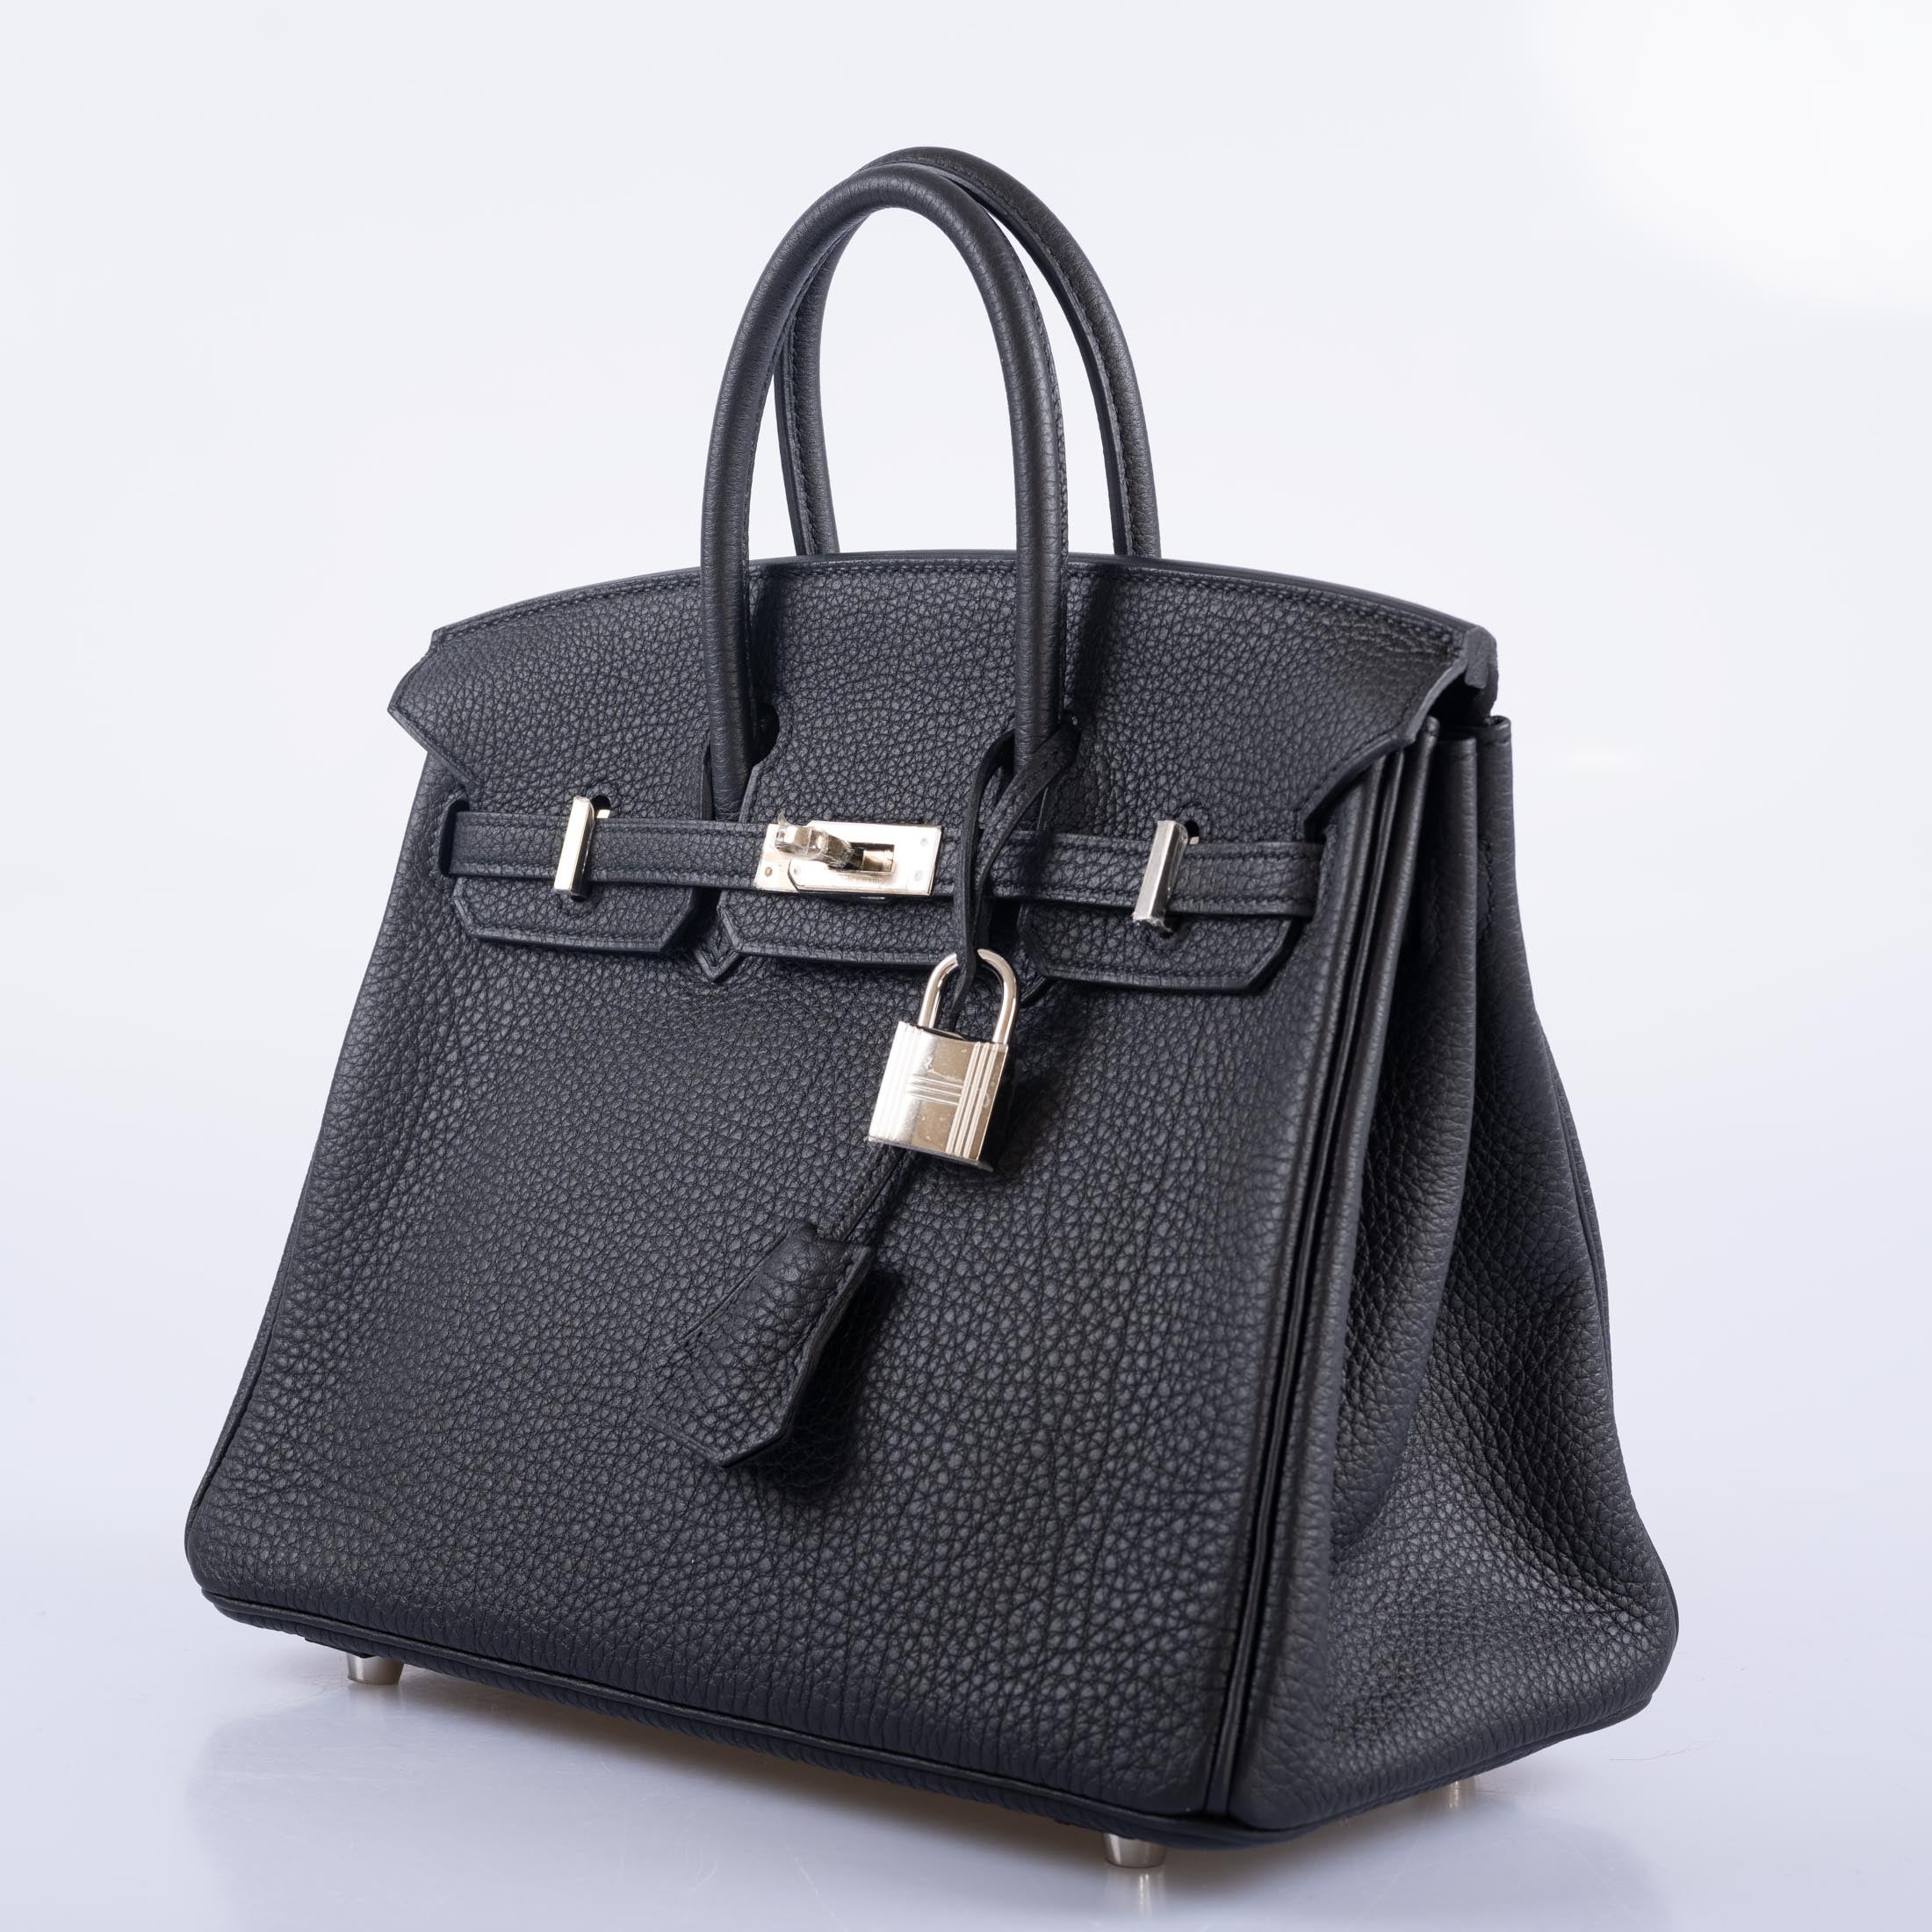 Hermès Birkin 25 Black Togo with Palladium Hardware